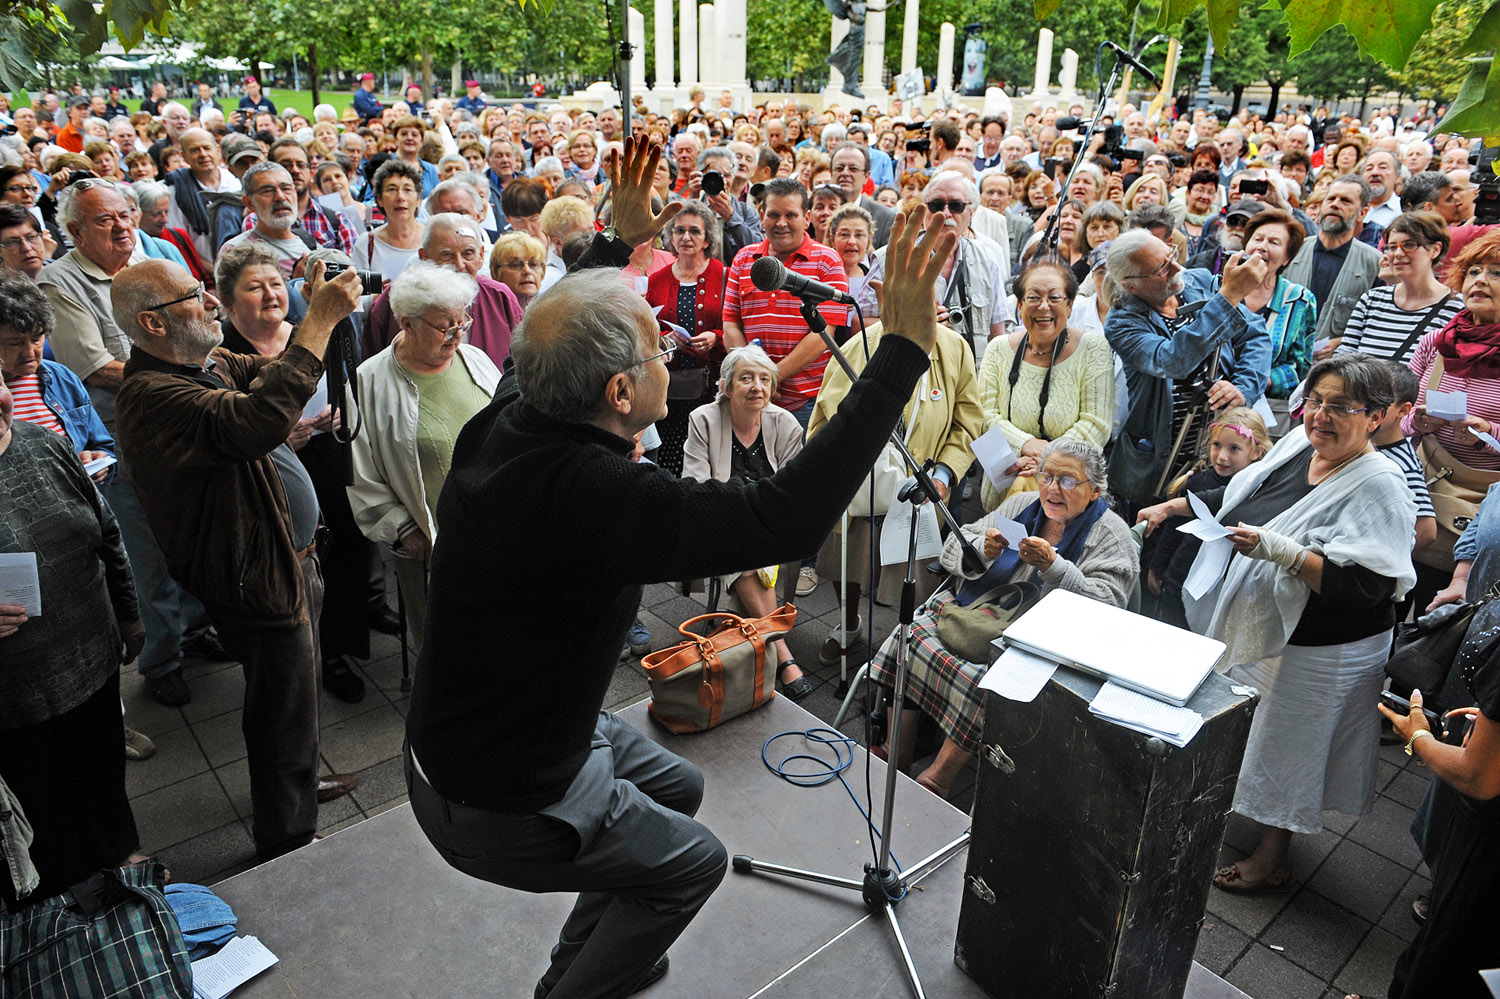 A Szabadságkórust idén június 21-én vezényli majd Fischer a Szabadság téren. Fotónk tavaly készült, az emlékmű árnyékában